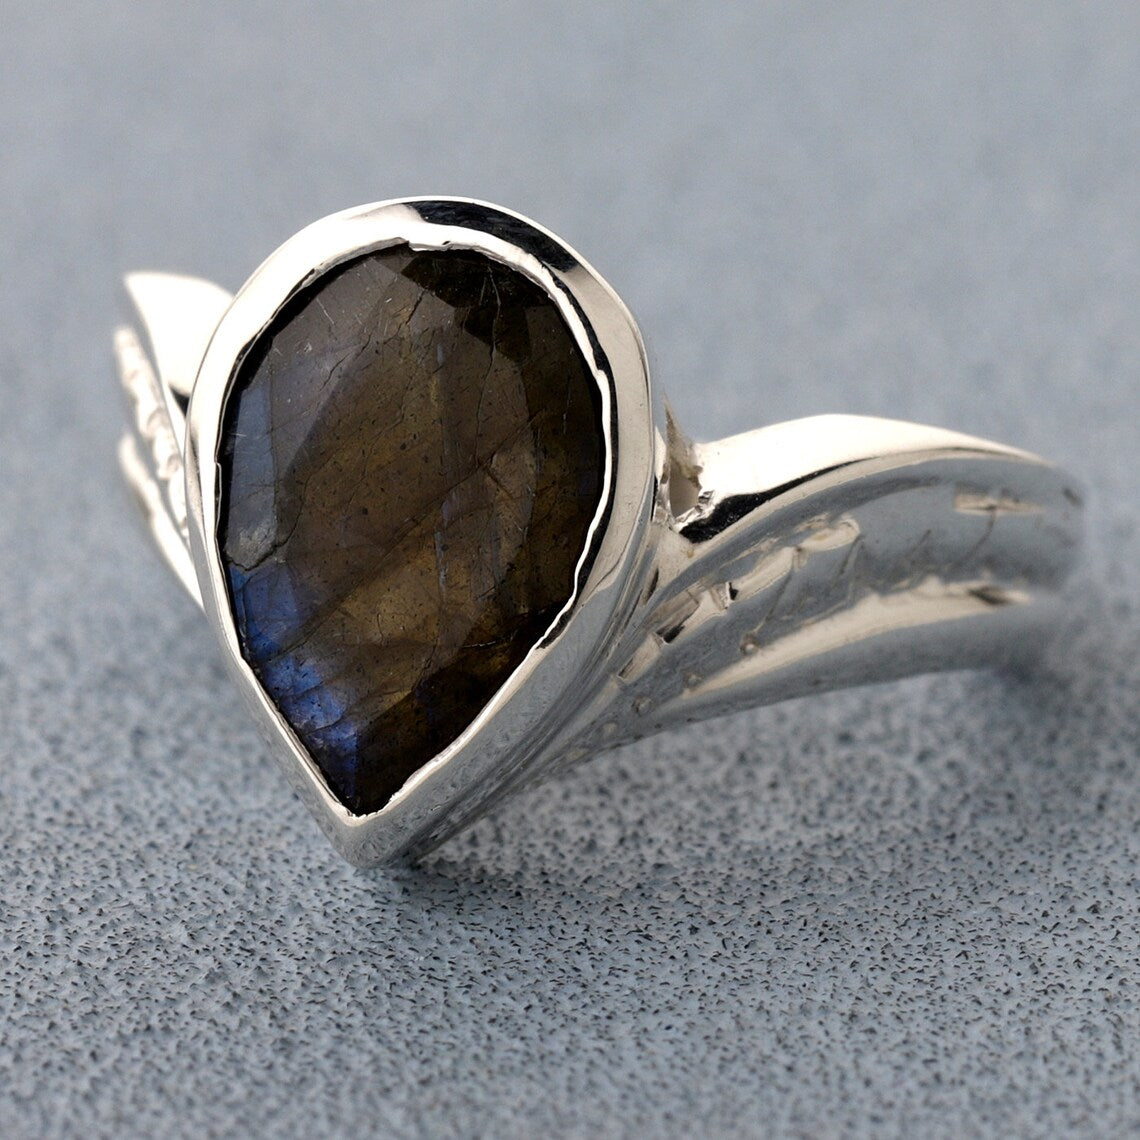 Labradorite Ring * Sterling Silver Ring * Statement Ring * Gemstone Ring * Labradorite * Bridal Ring * Wedding Ring * Organic Ring